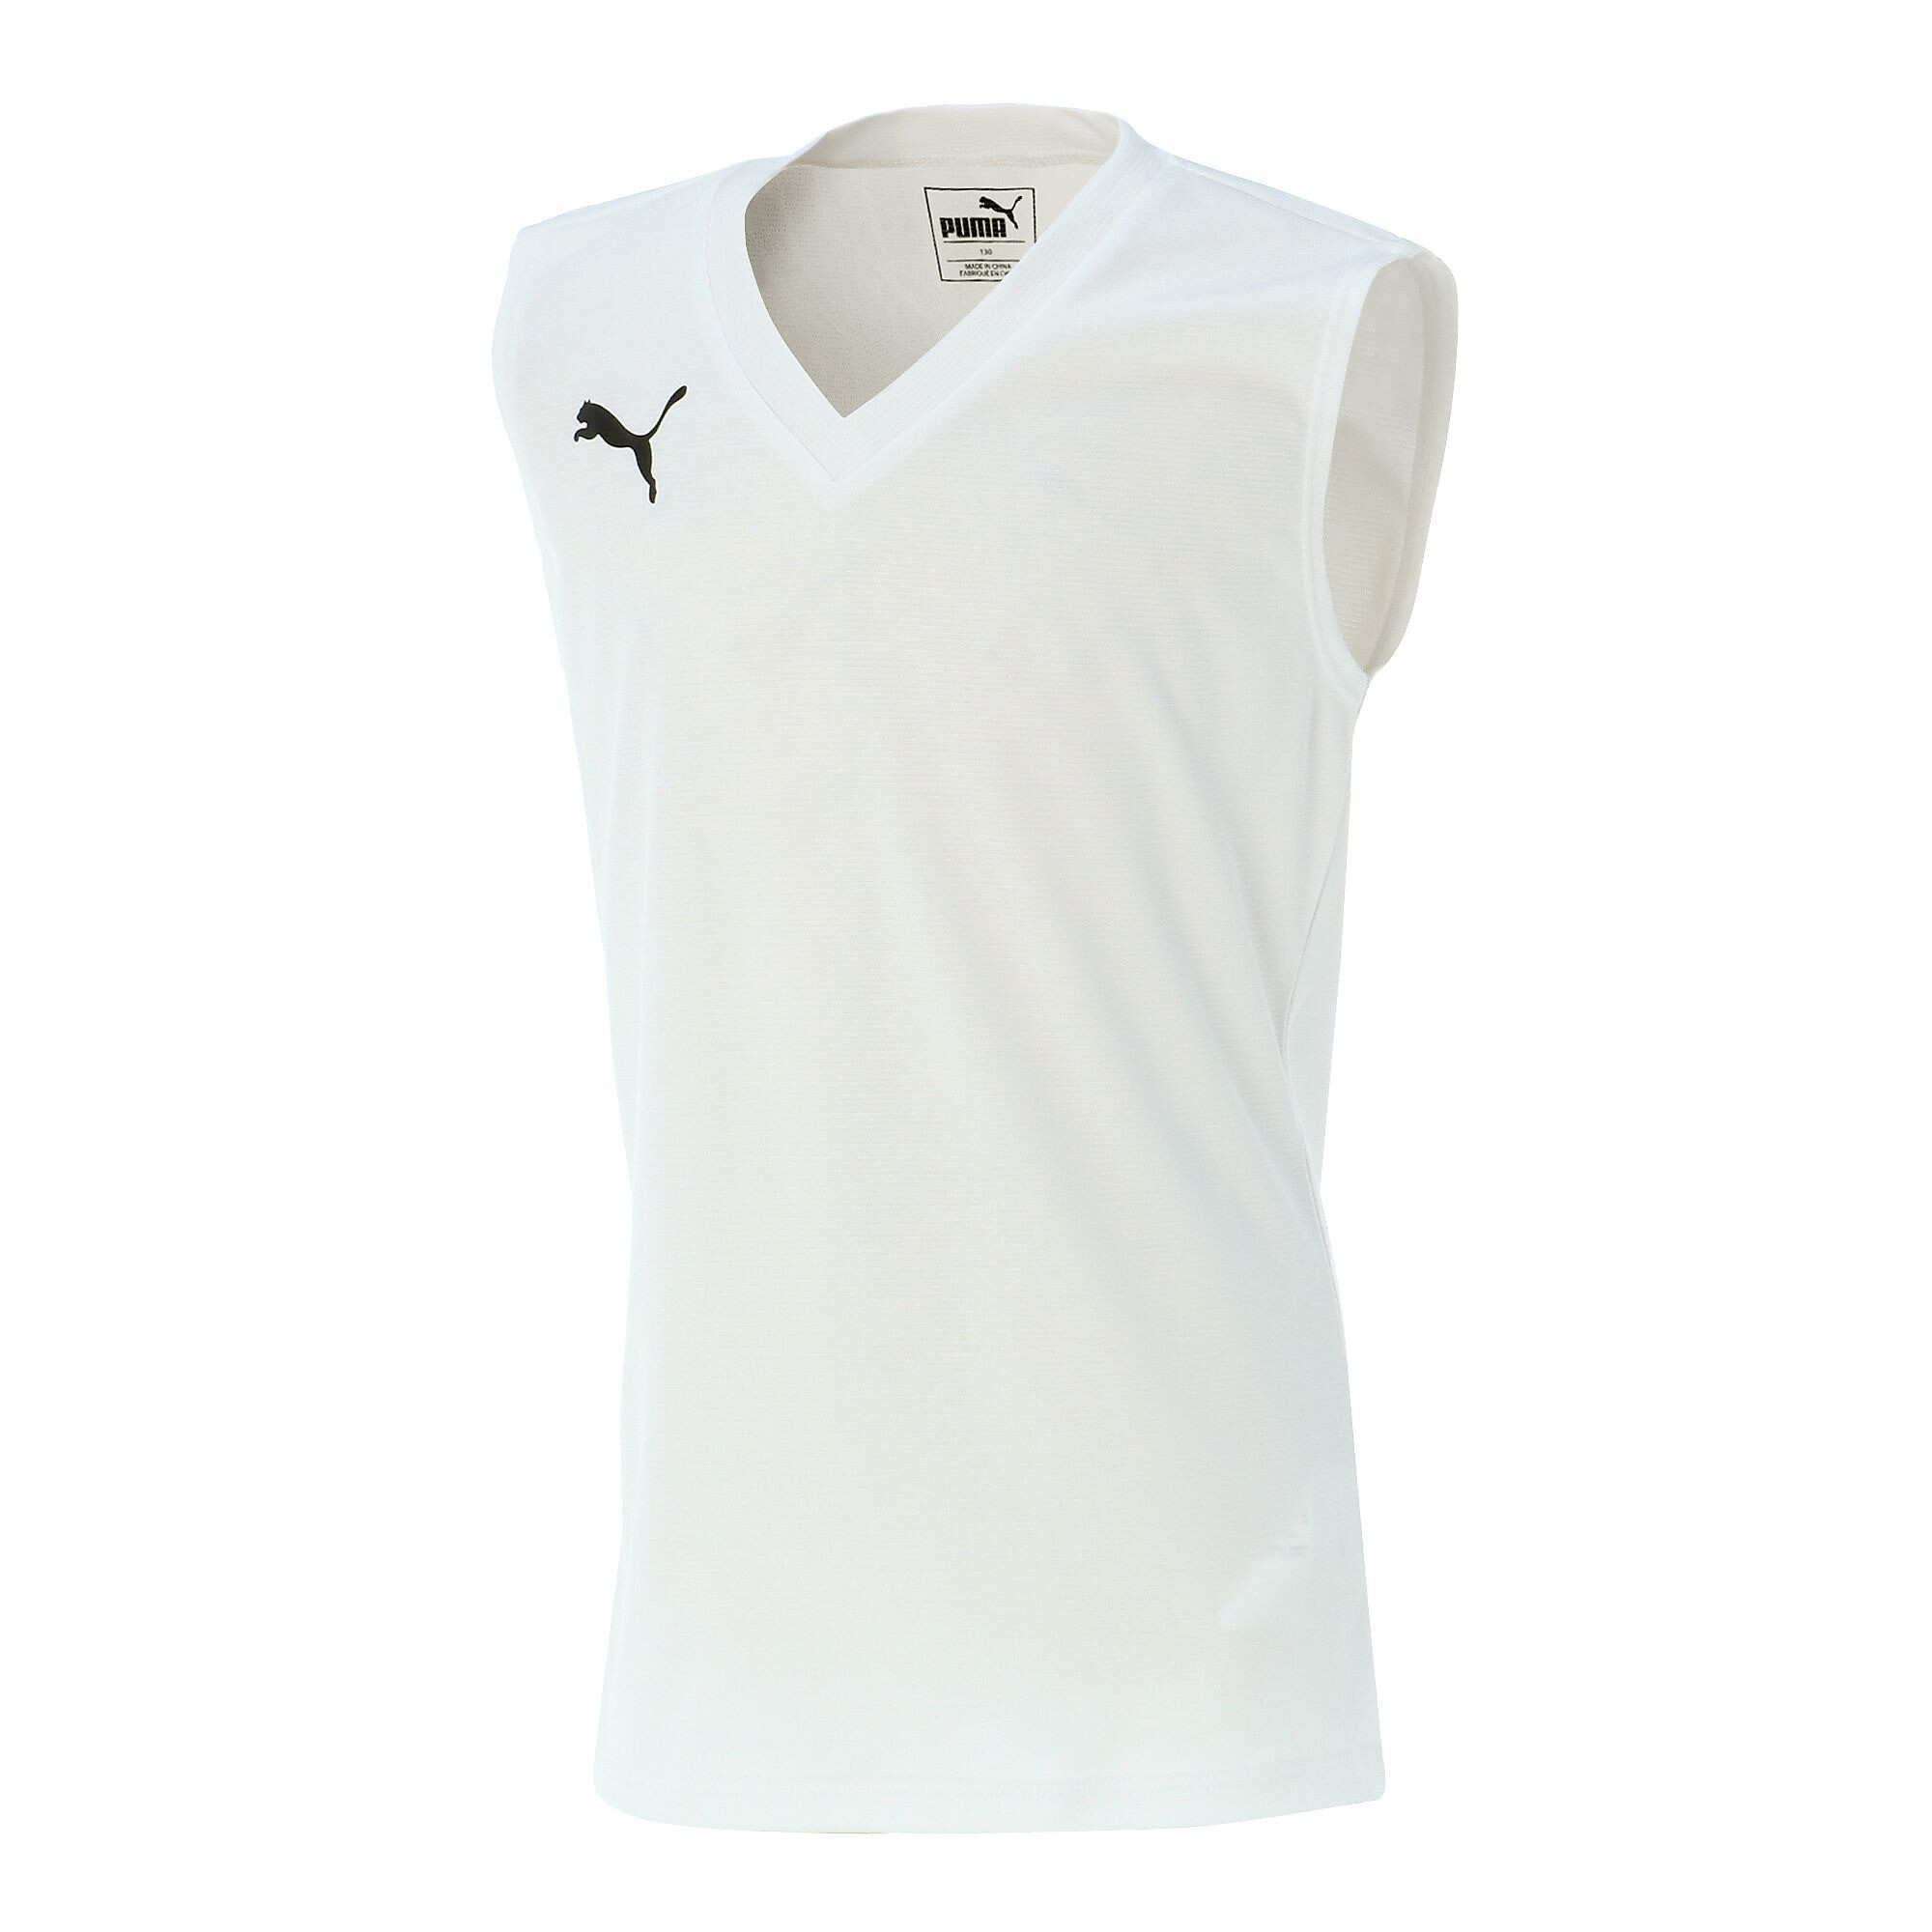  プーマ キッズ ジュニア SL サッカー インナーシャツ タンクトップ 120-160cm メンズ Puma White ｜PUMA.com